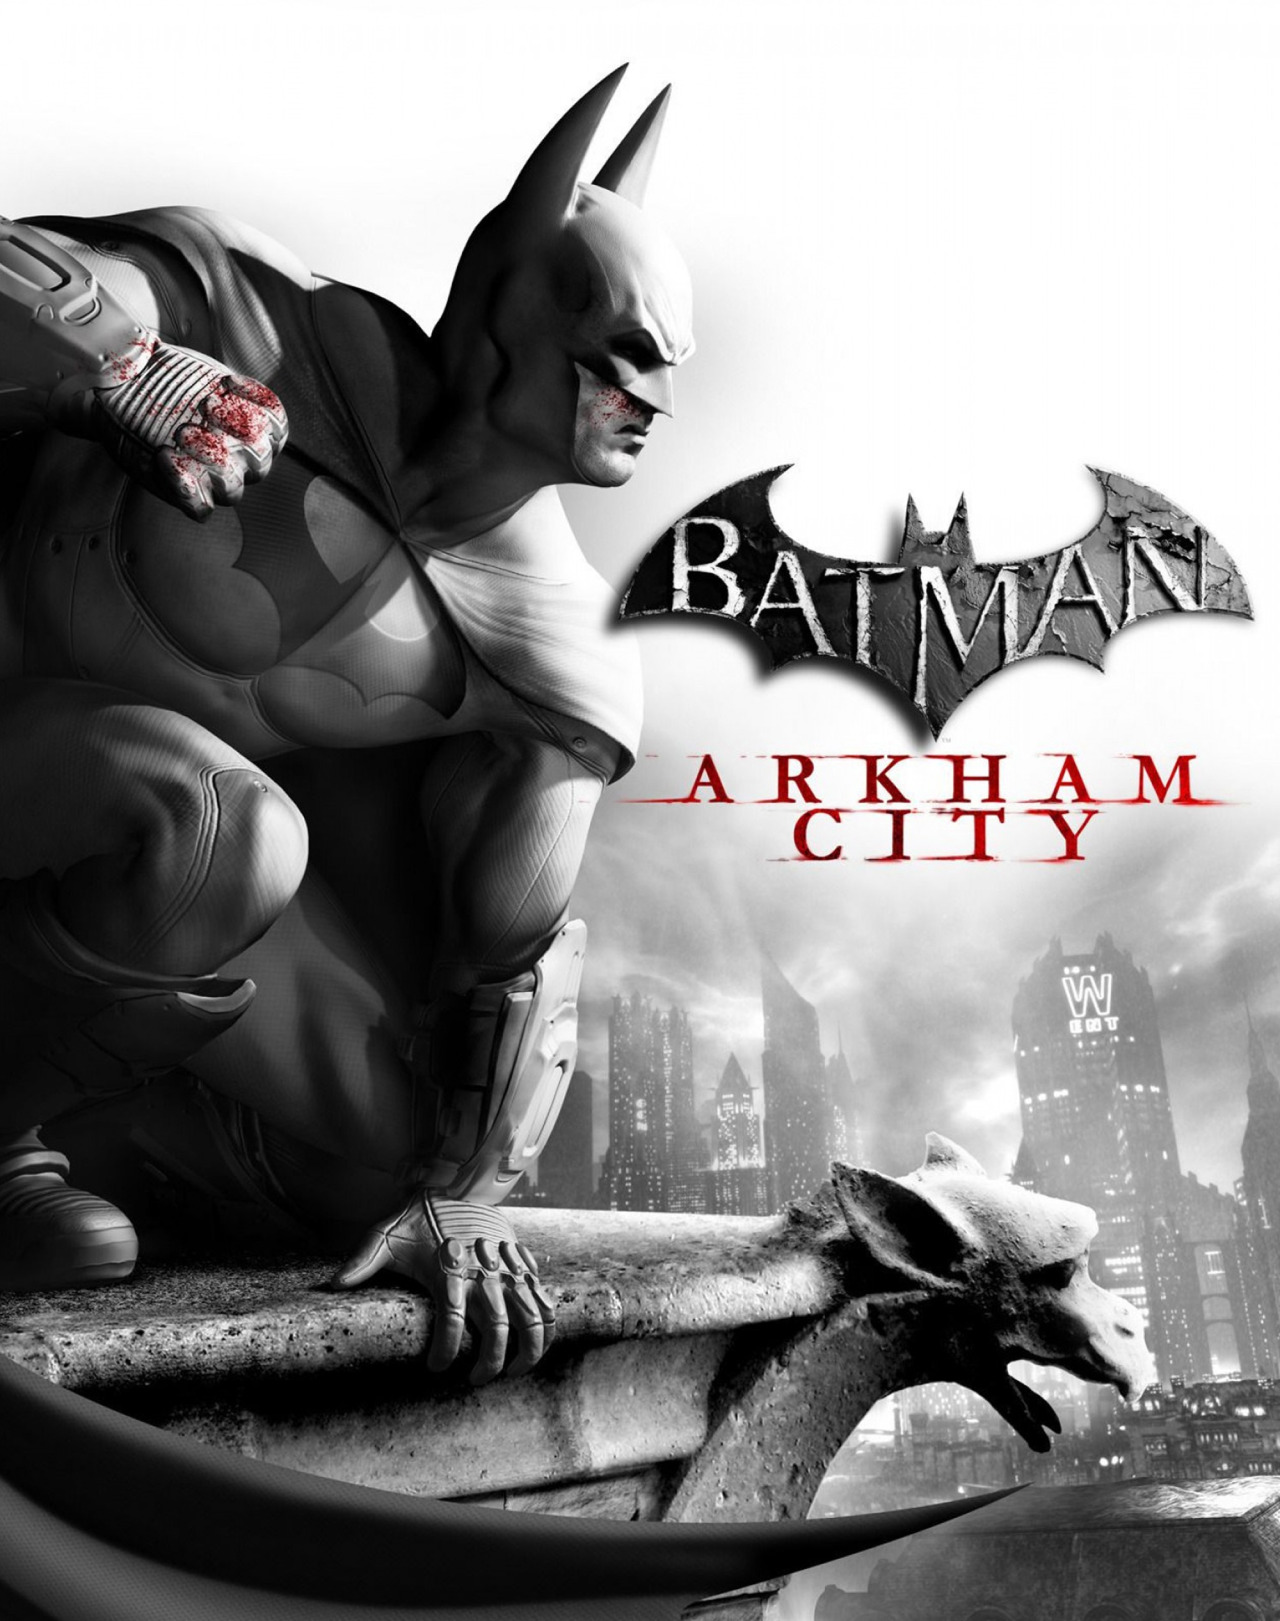 Batman: Arkham City | Doblaje Wiki | Fandom